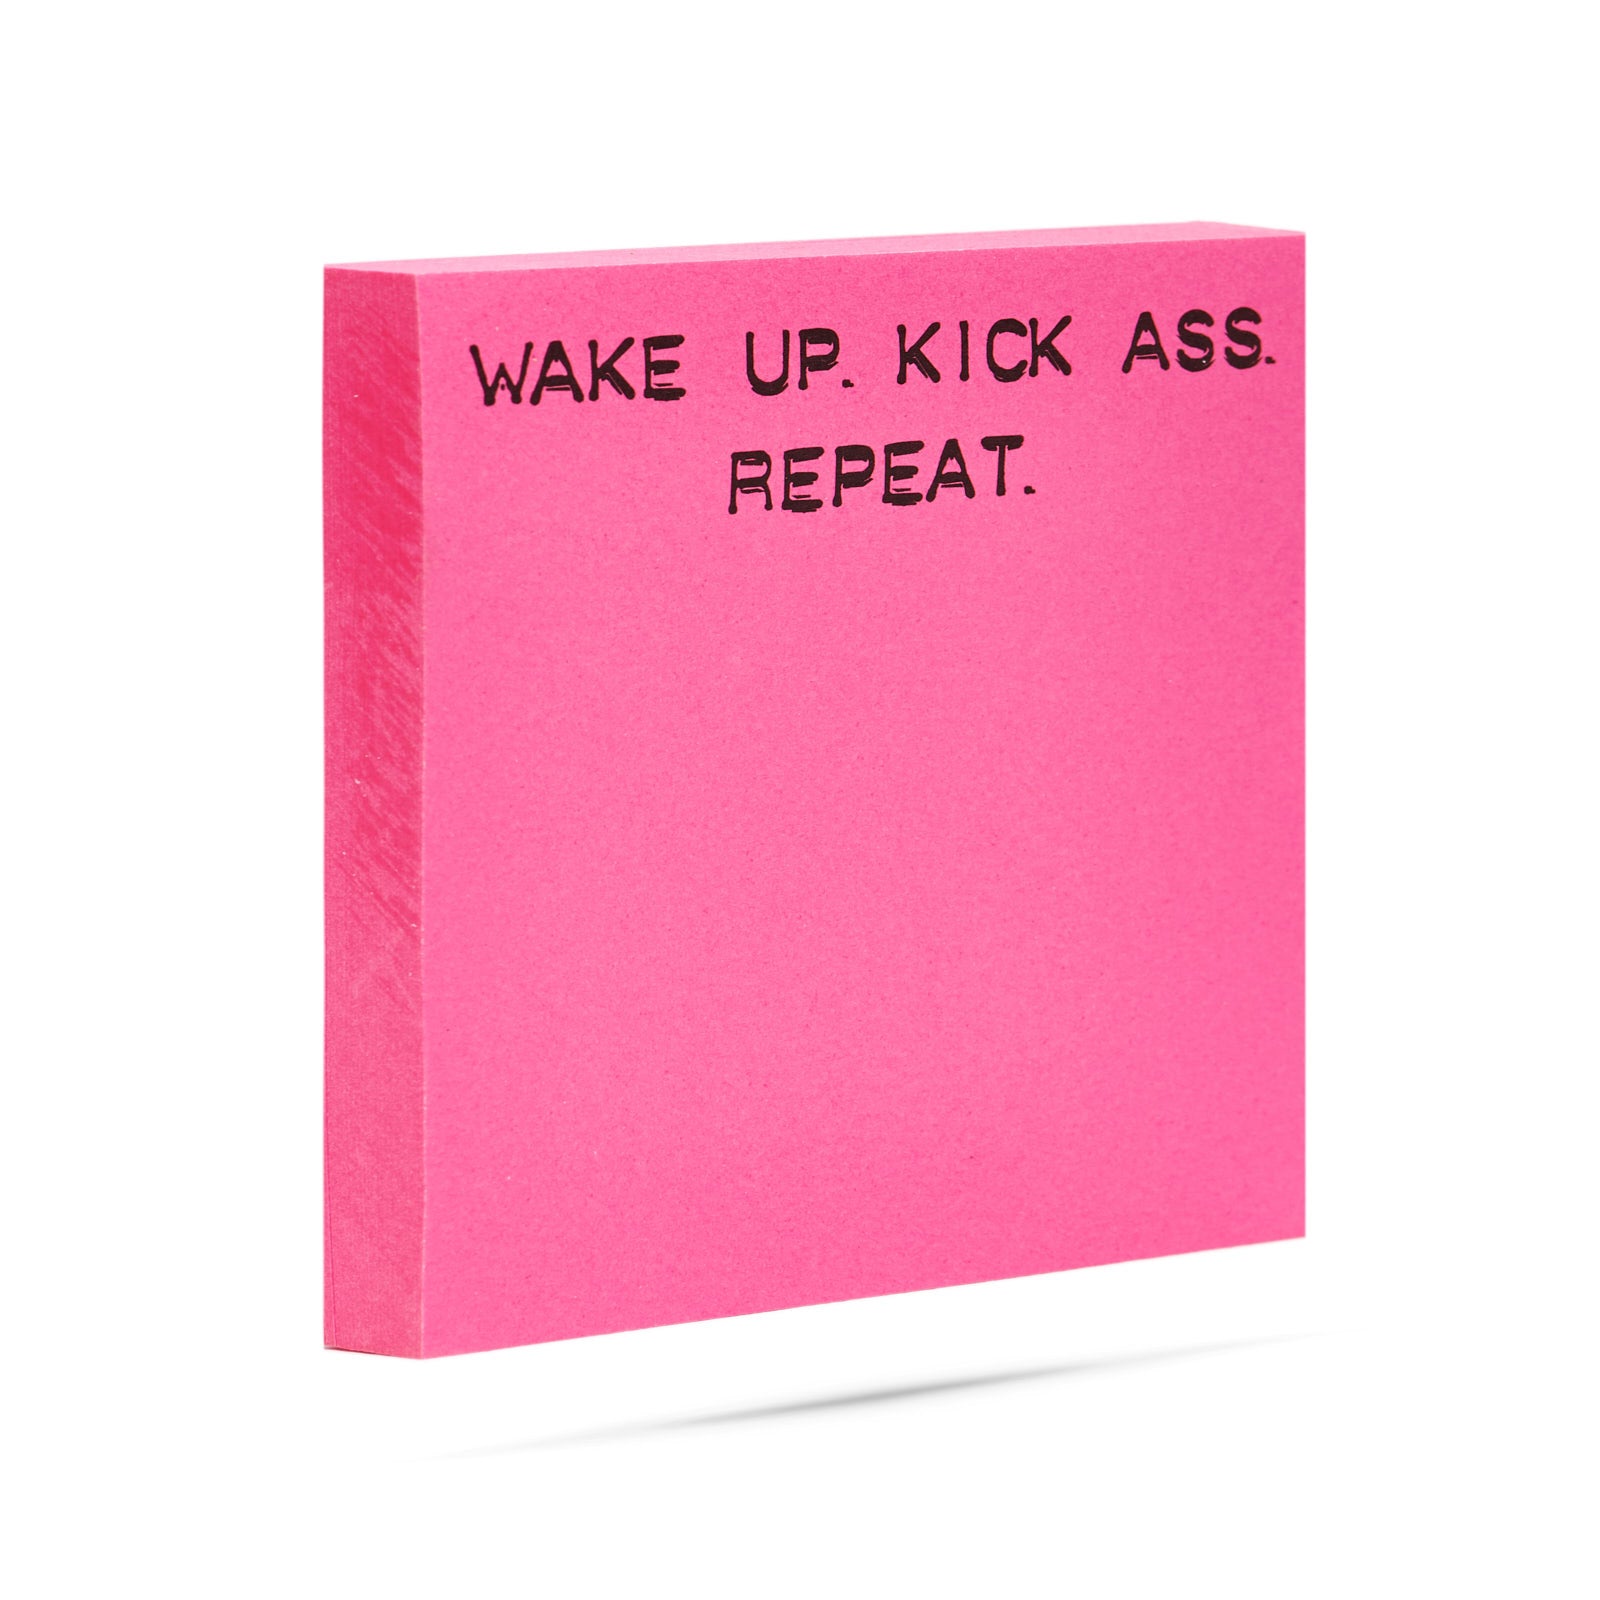 Wake up. Kick ass. Repeat. 100 sheet sticky note pad